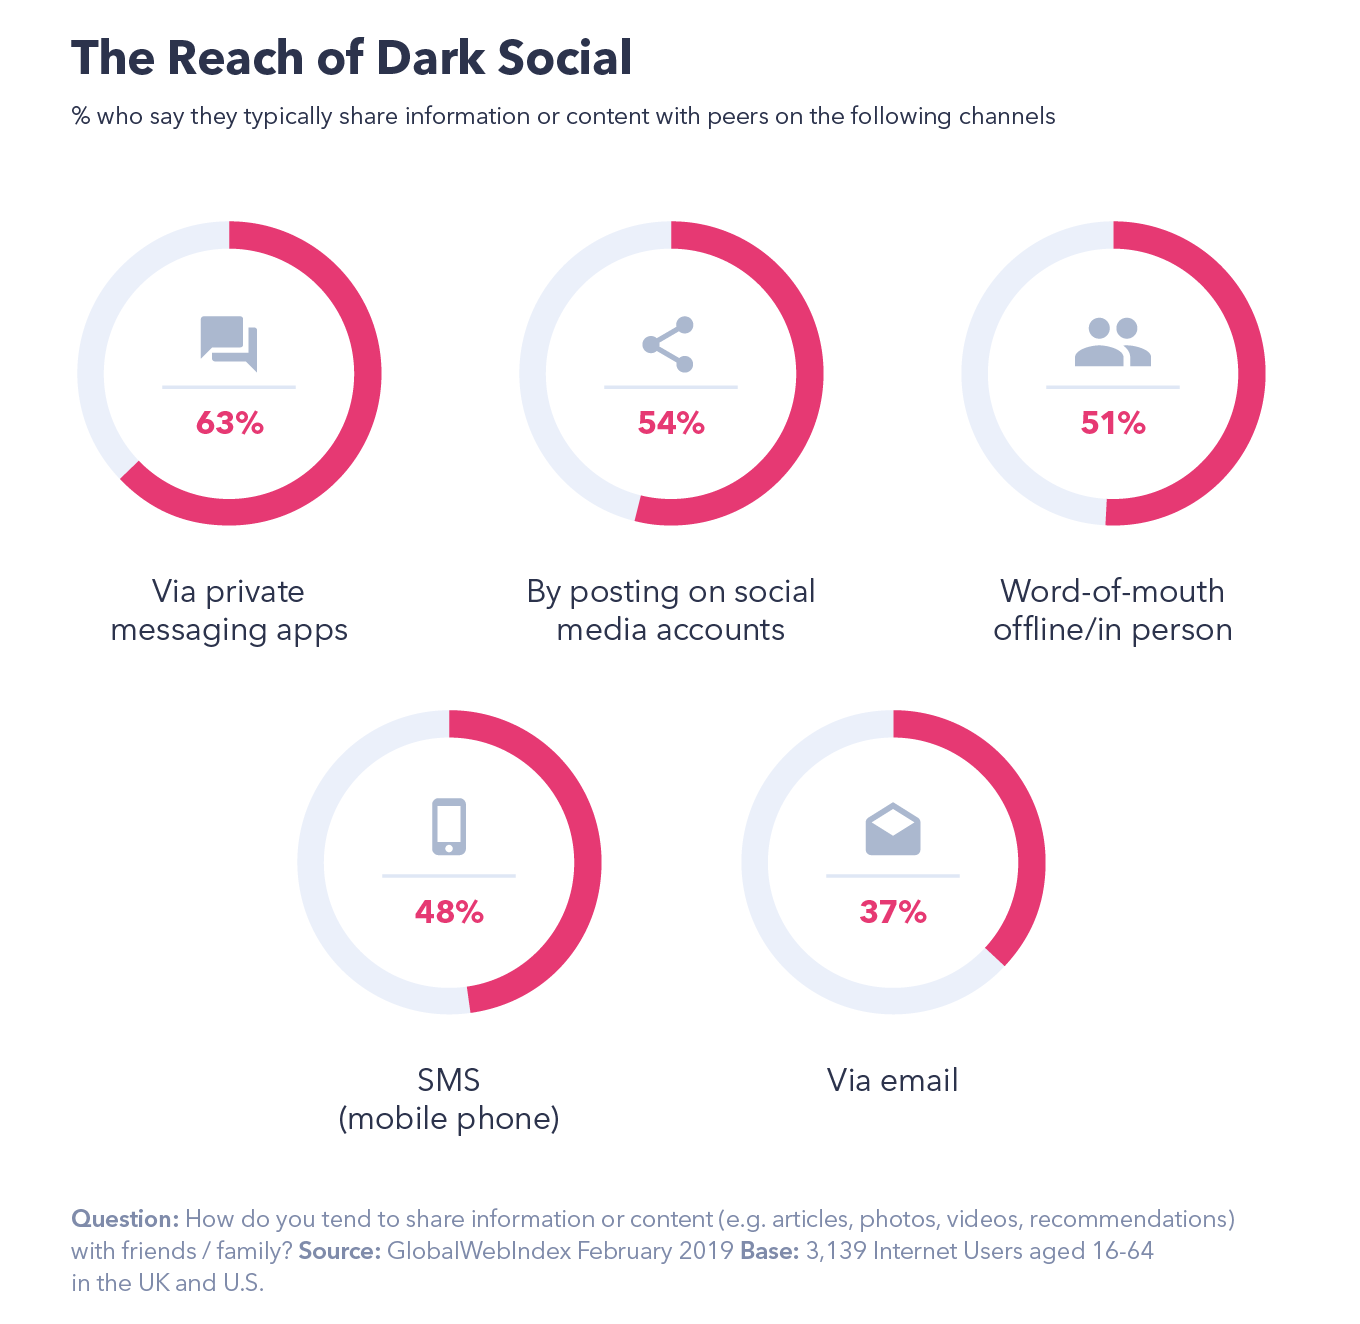 The reach of dark social media